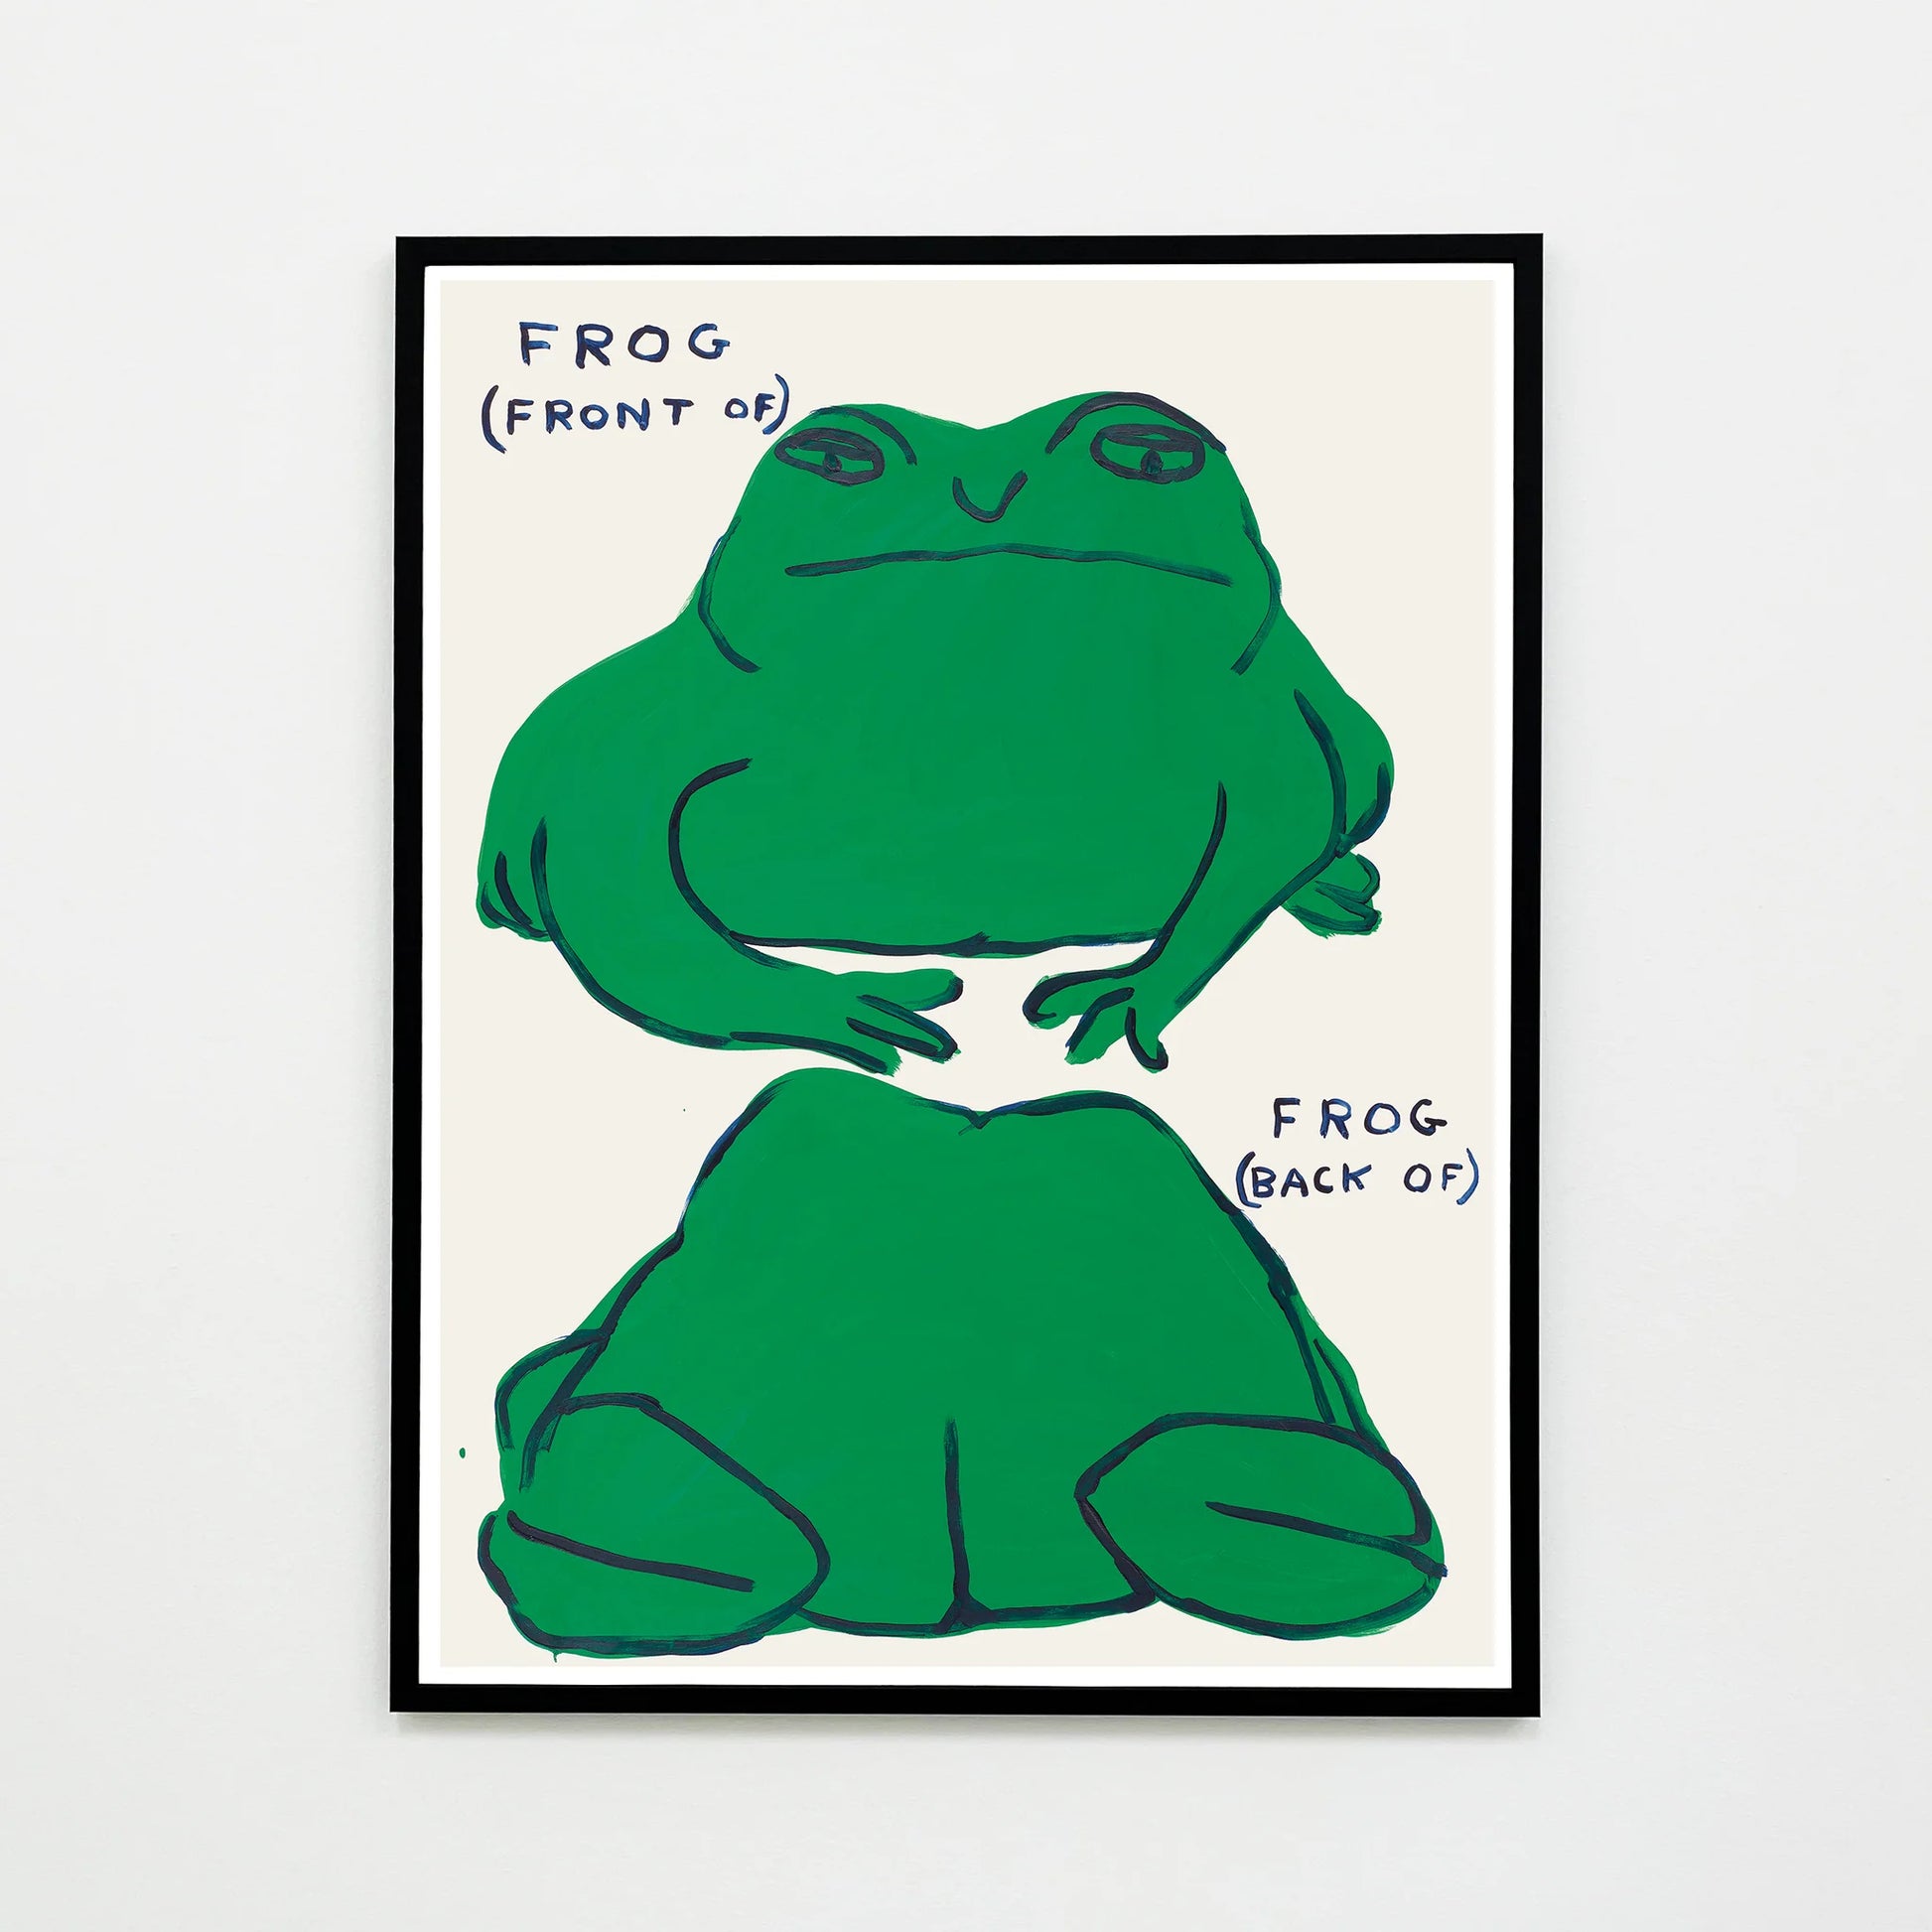 Frog (front of), Frog (back of) - Smolensky Gallery